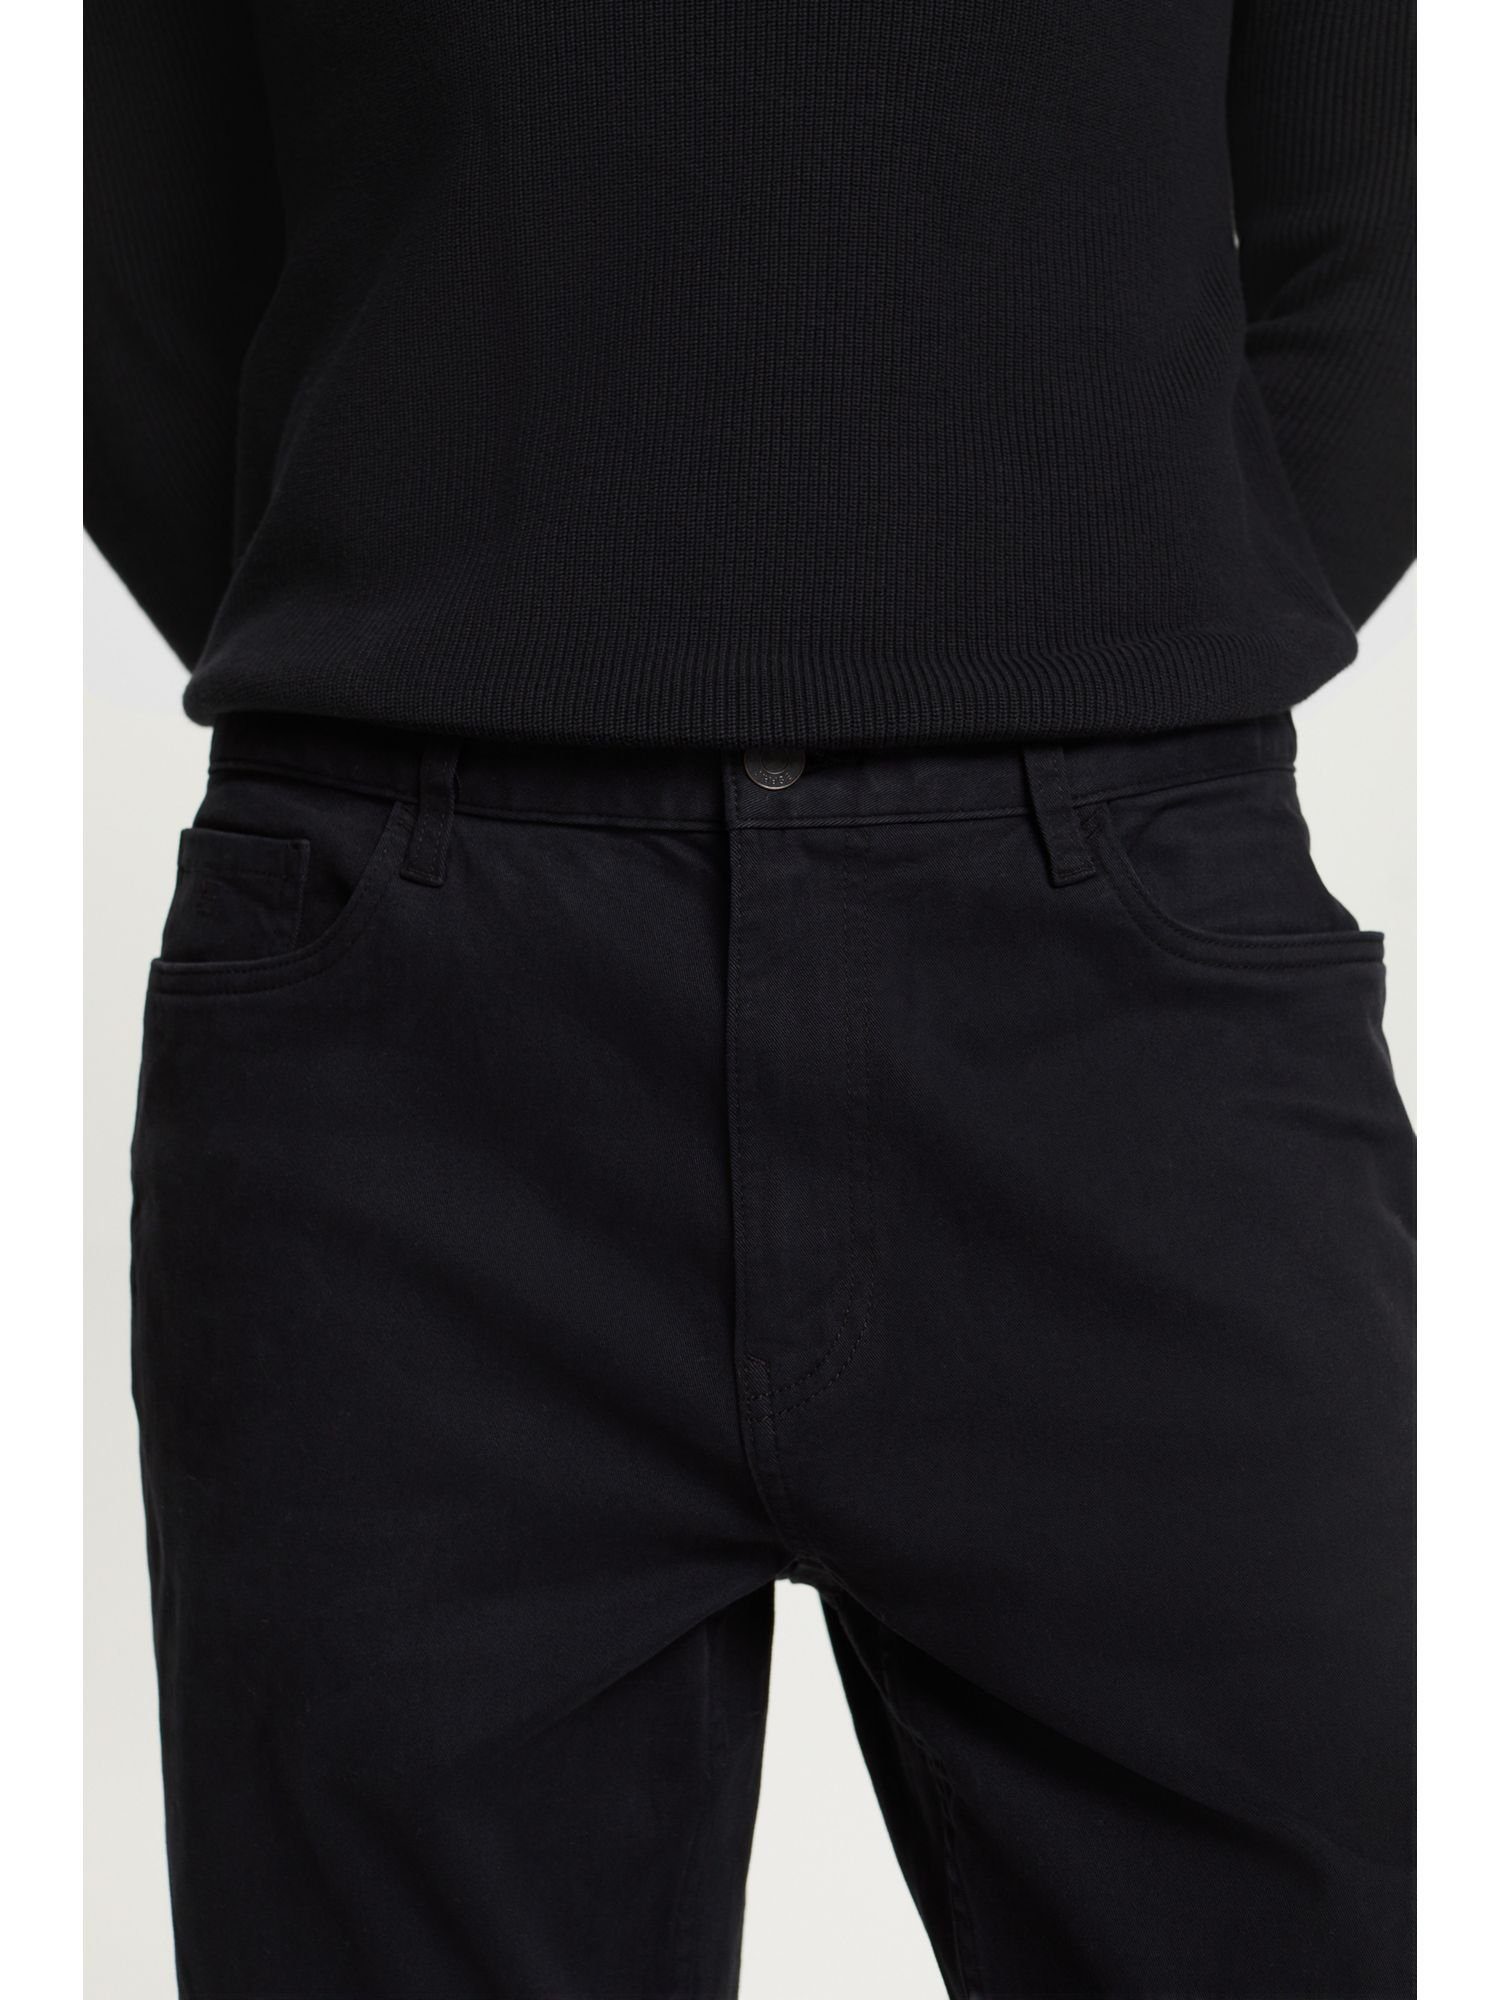 Passform gerader BLACK Esprit Stretch-Hose mit Klassische Hose